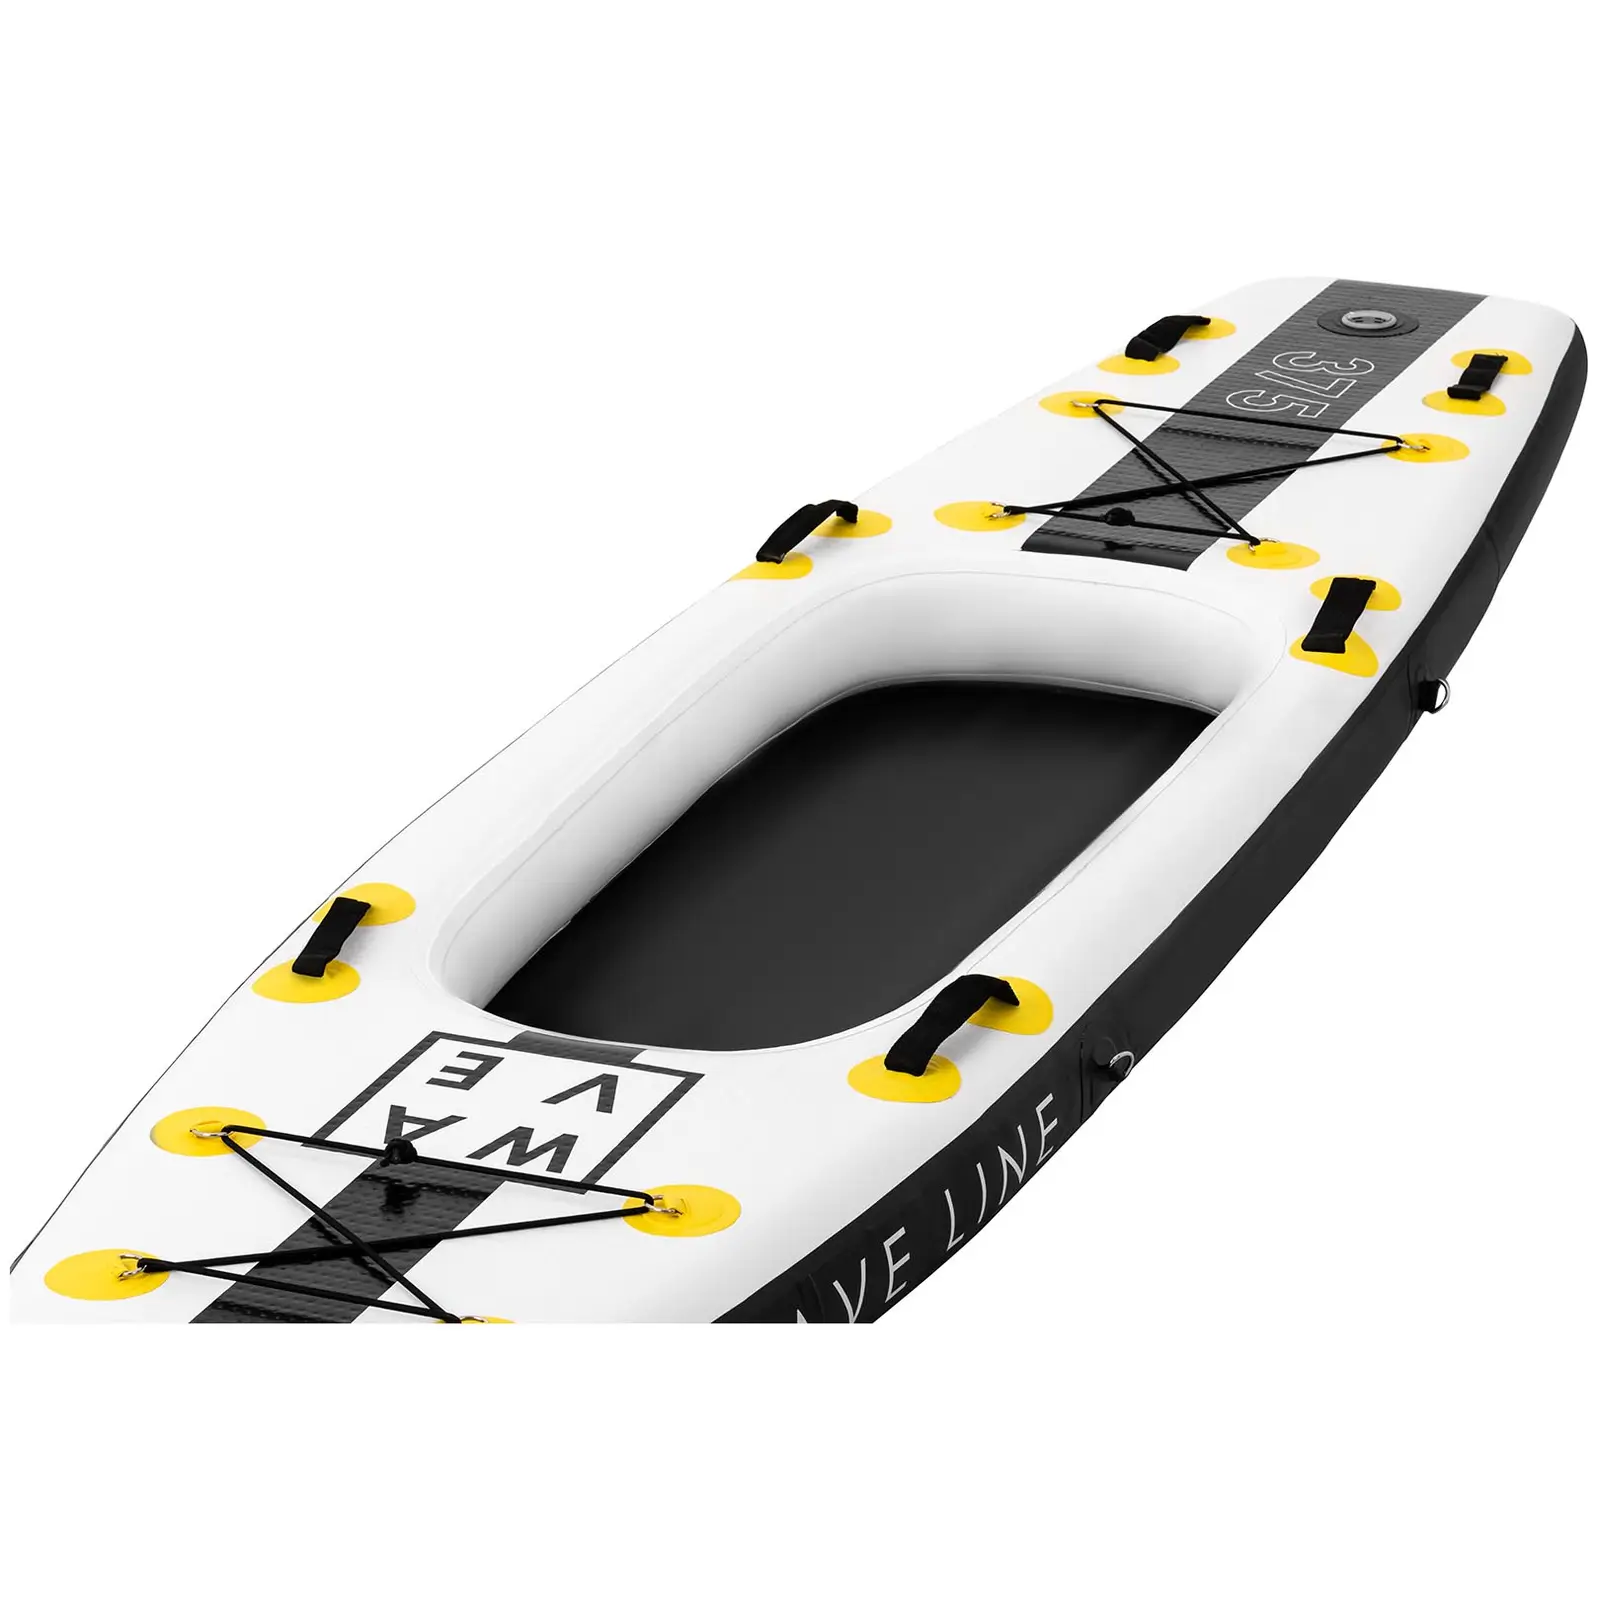 Stand up paddle gonflable - 120 kg - Noir/jaune - Kit incluant pagaie, siège et accessoires - 6